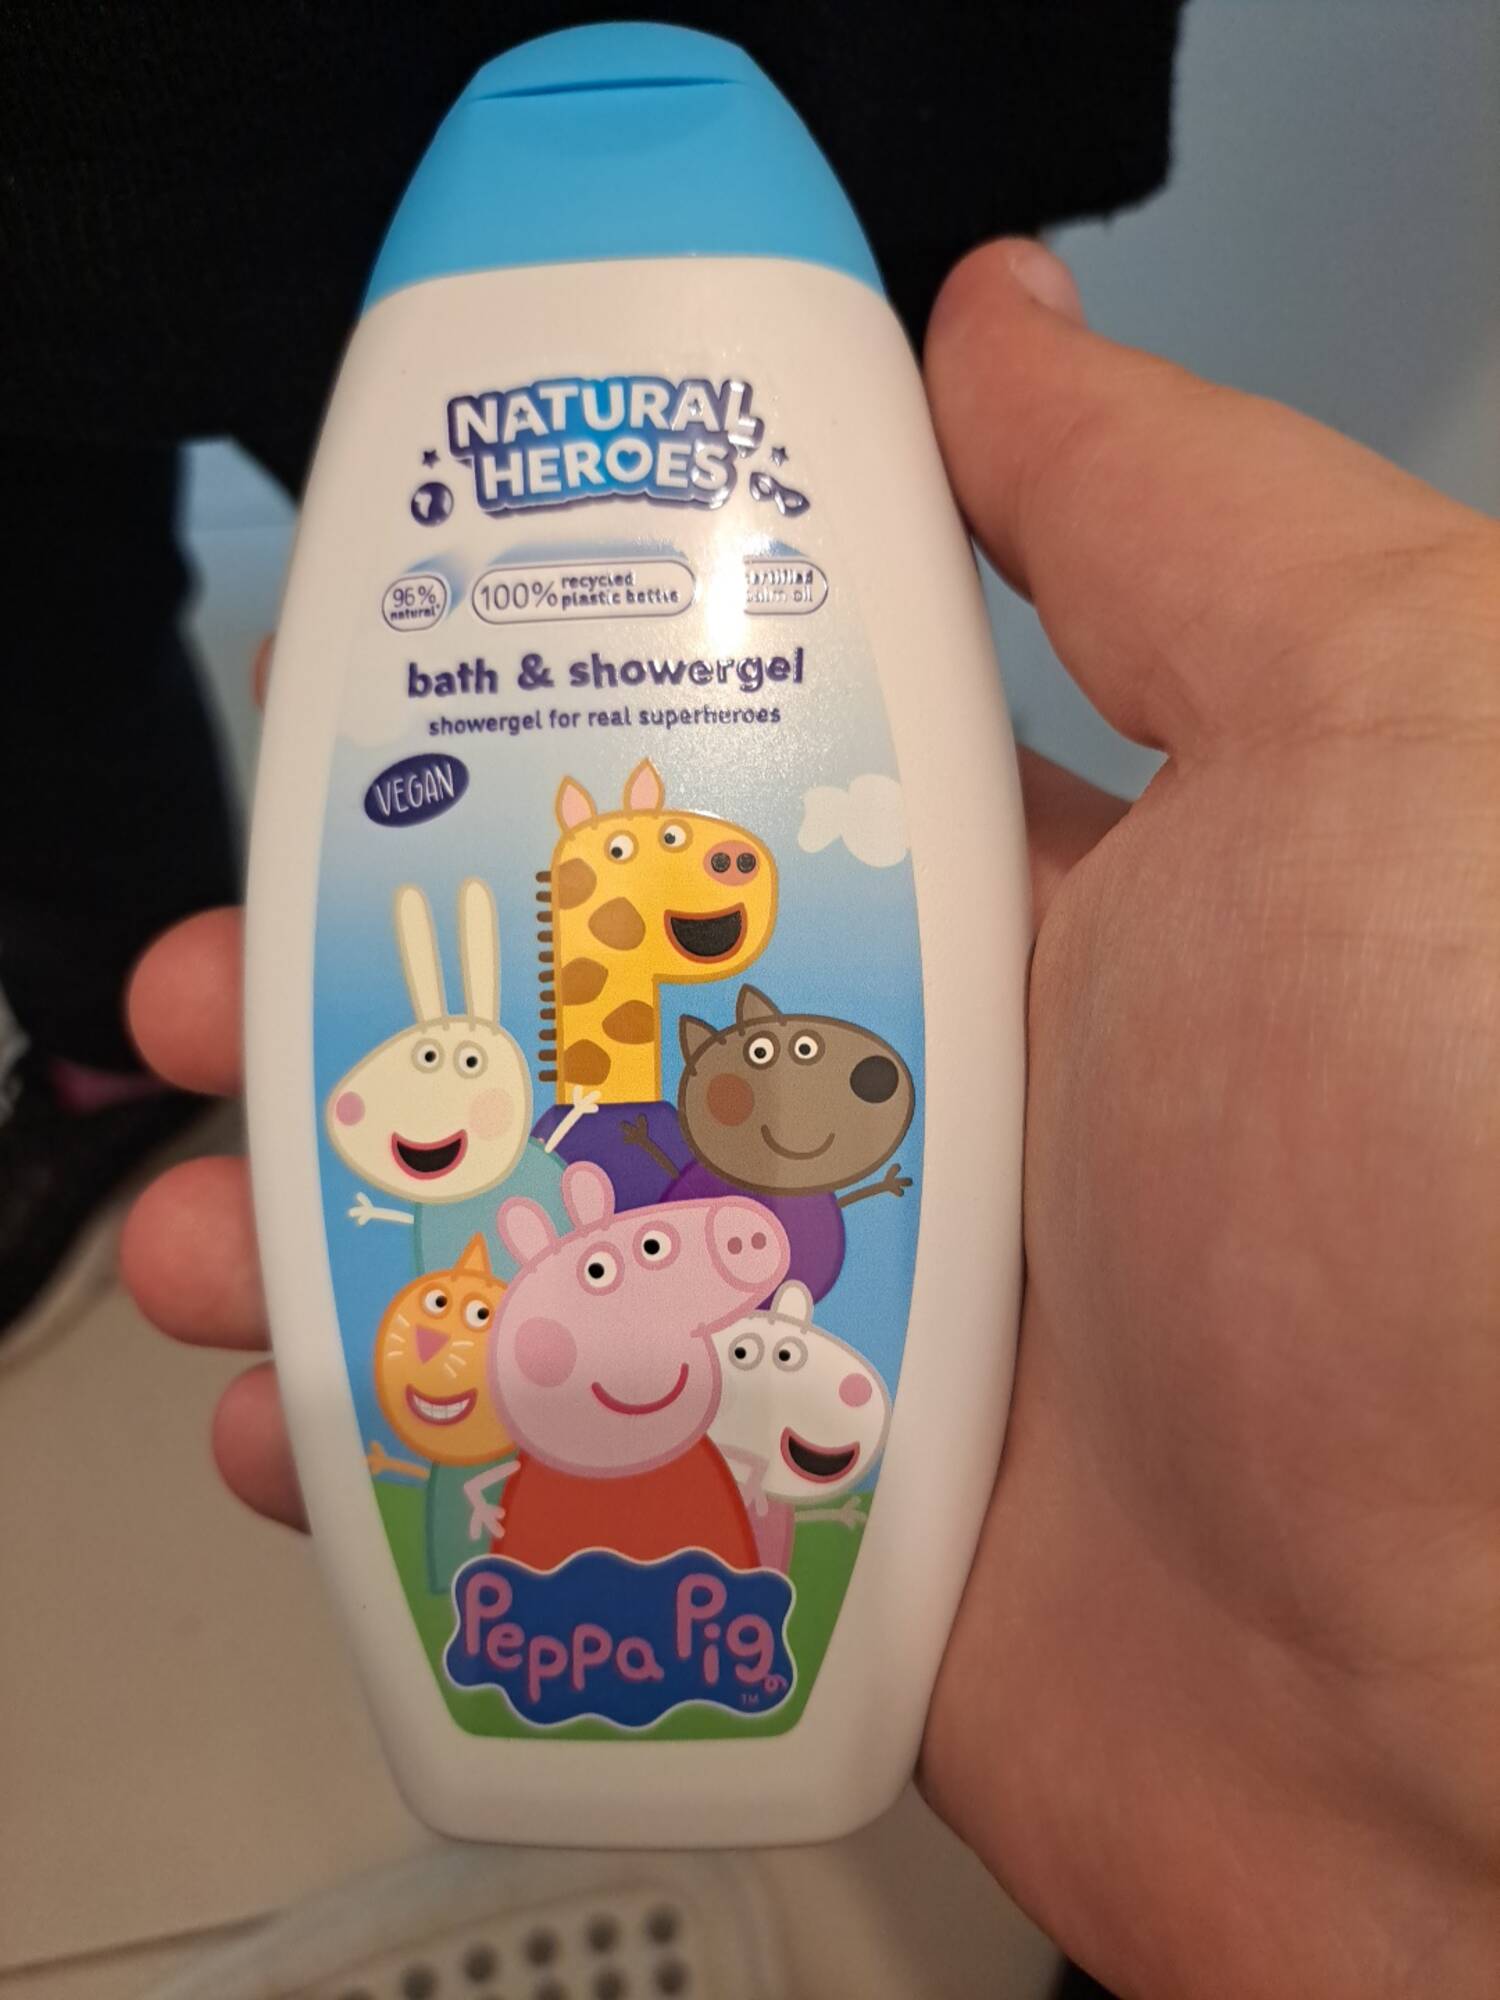 NATURAL HEROES - Peppa pig - Bath & showergel